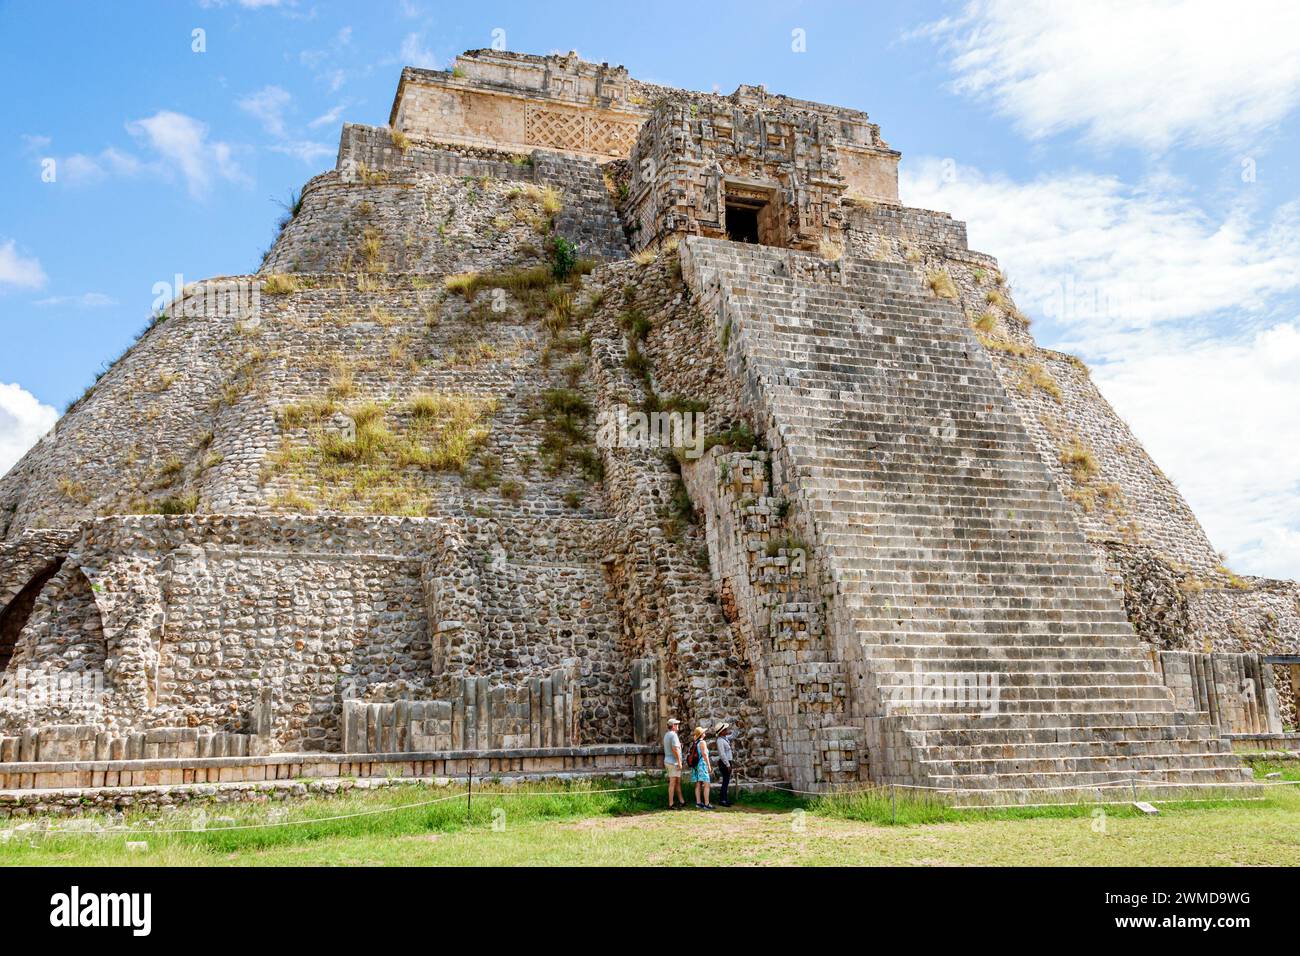 Merida Mexico, Puuc style Uxmal Archaeological zone site, Zona Arqueologica de Uxmal, ville maya classique, Pyramide de la pyramide Mésoaméricaine magicienne à pas Banque D'Images